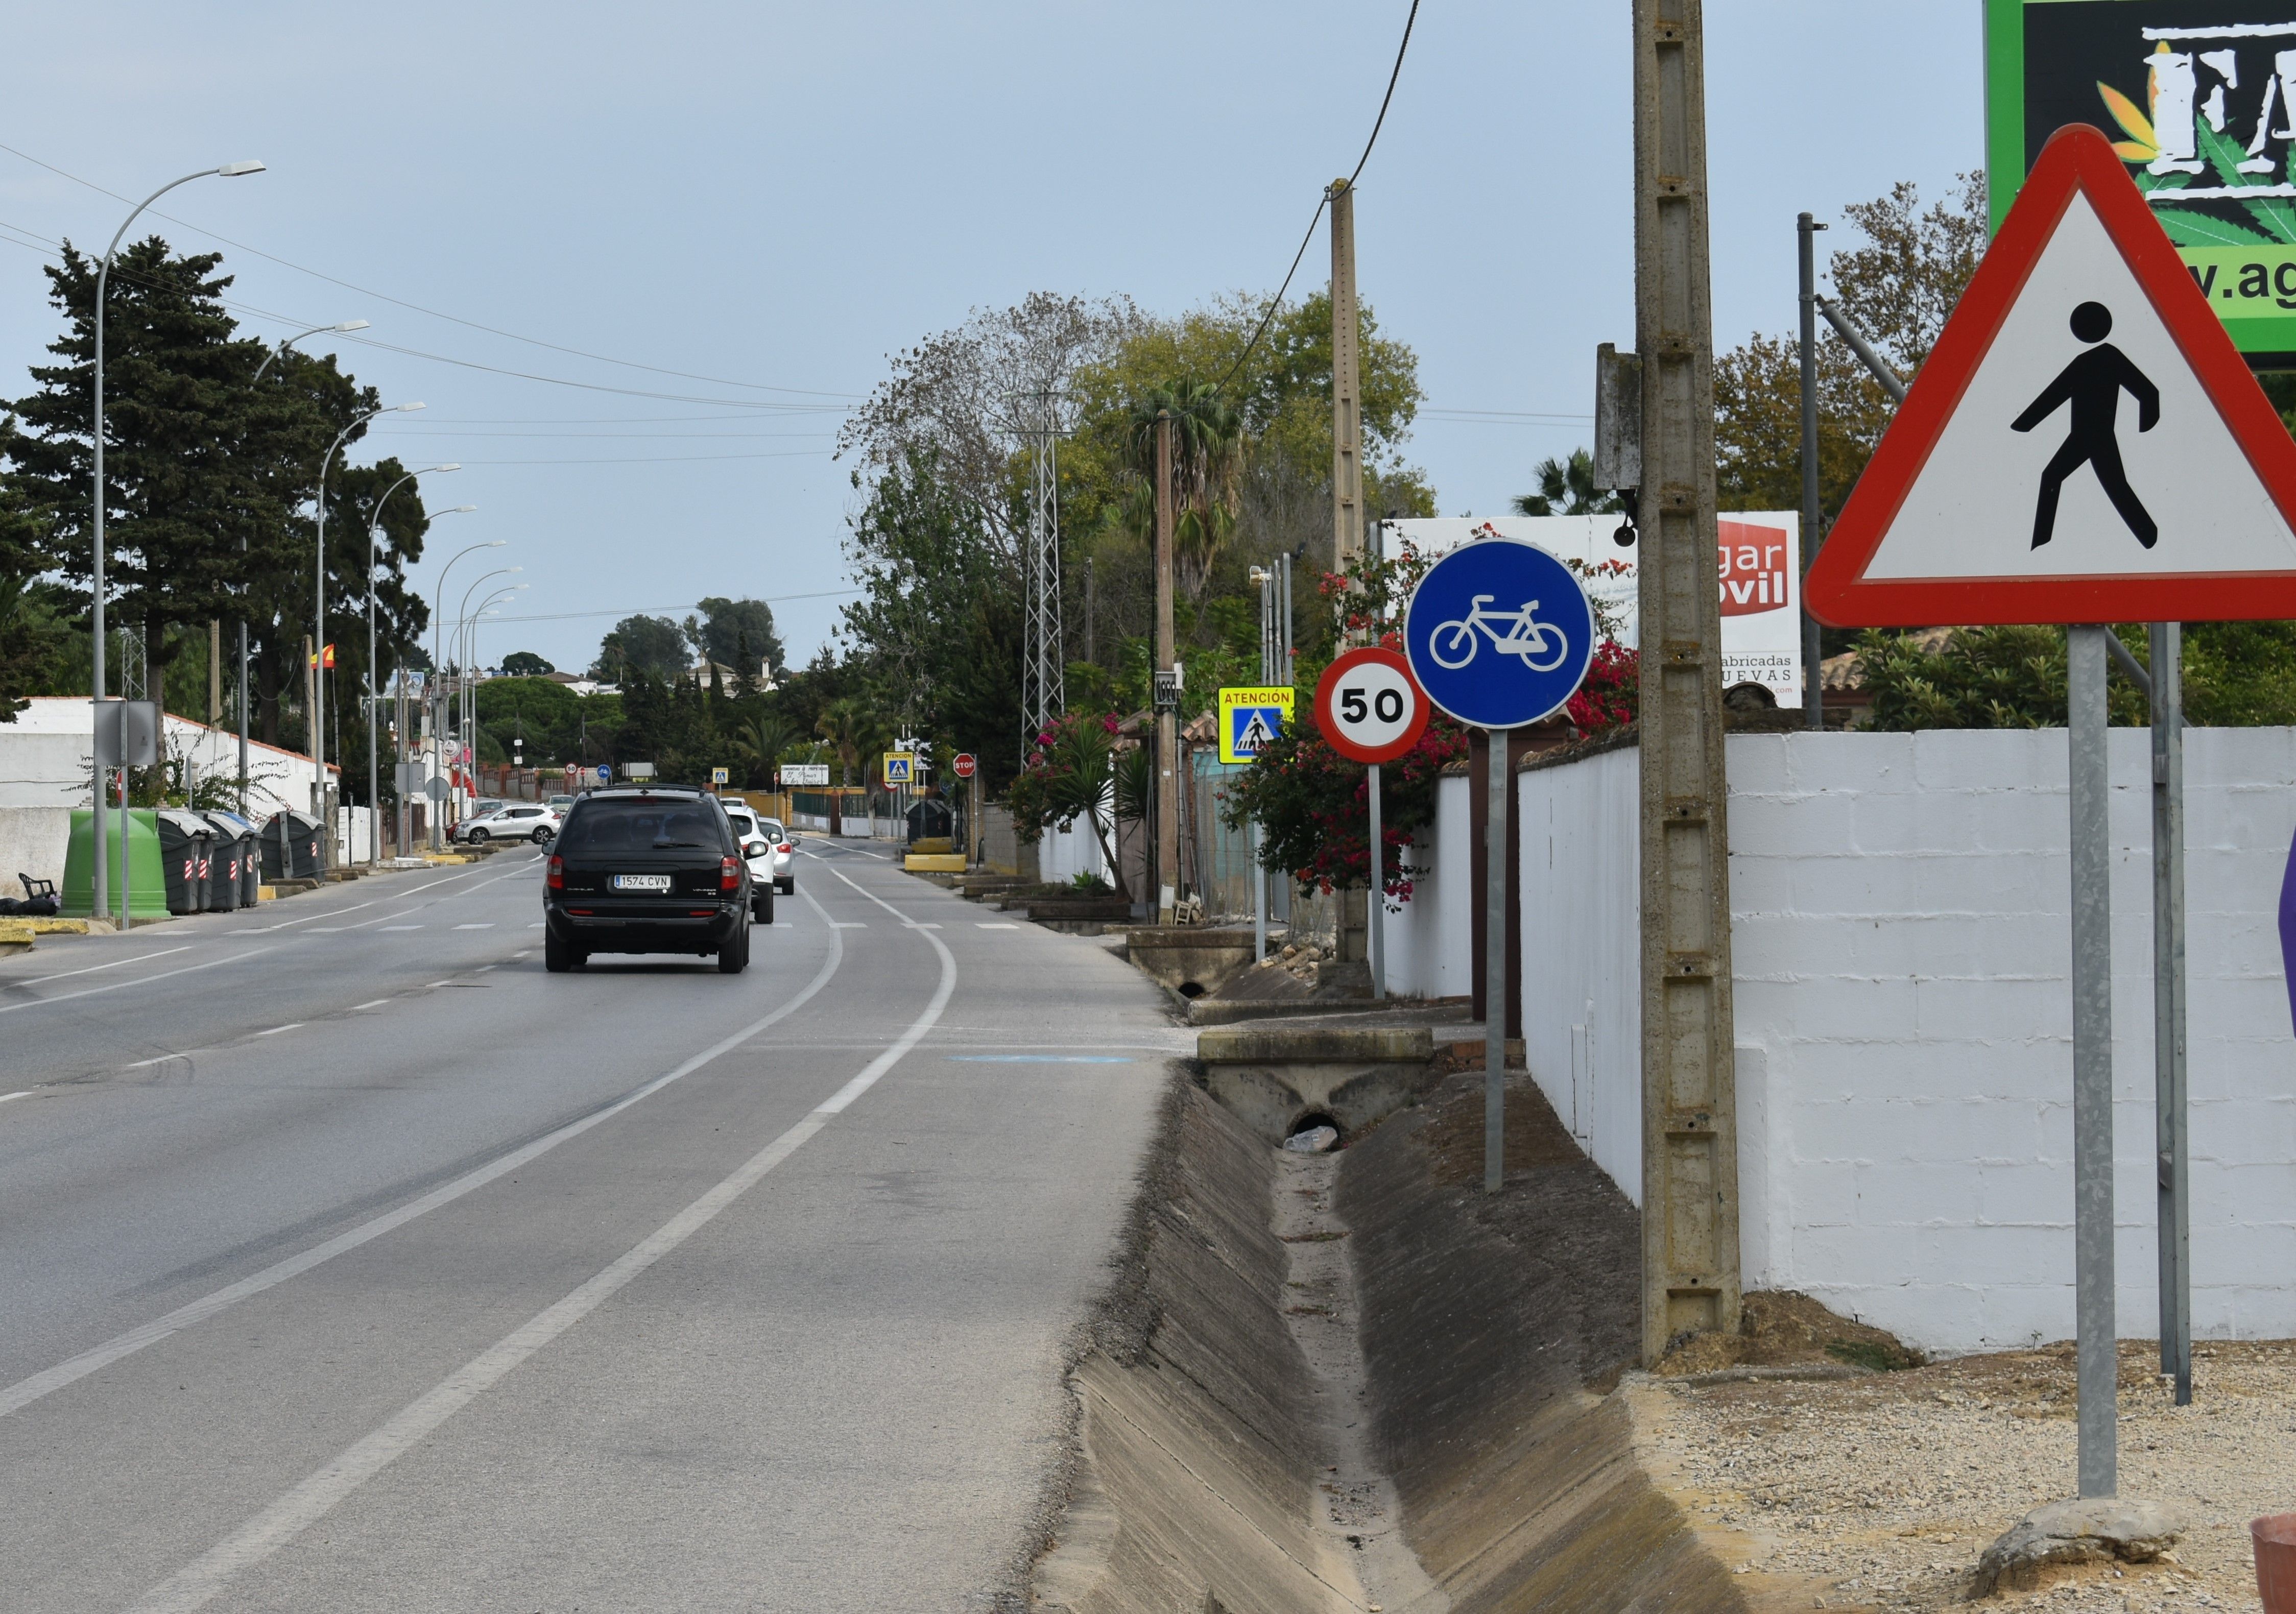 Carretera de acceso a las urbanzaciones existentes en la zona de la Rana Verde de Chiclana de la Frontera.